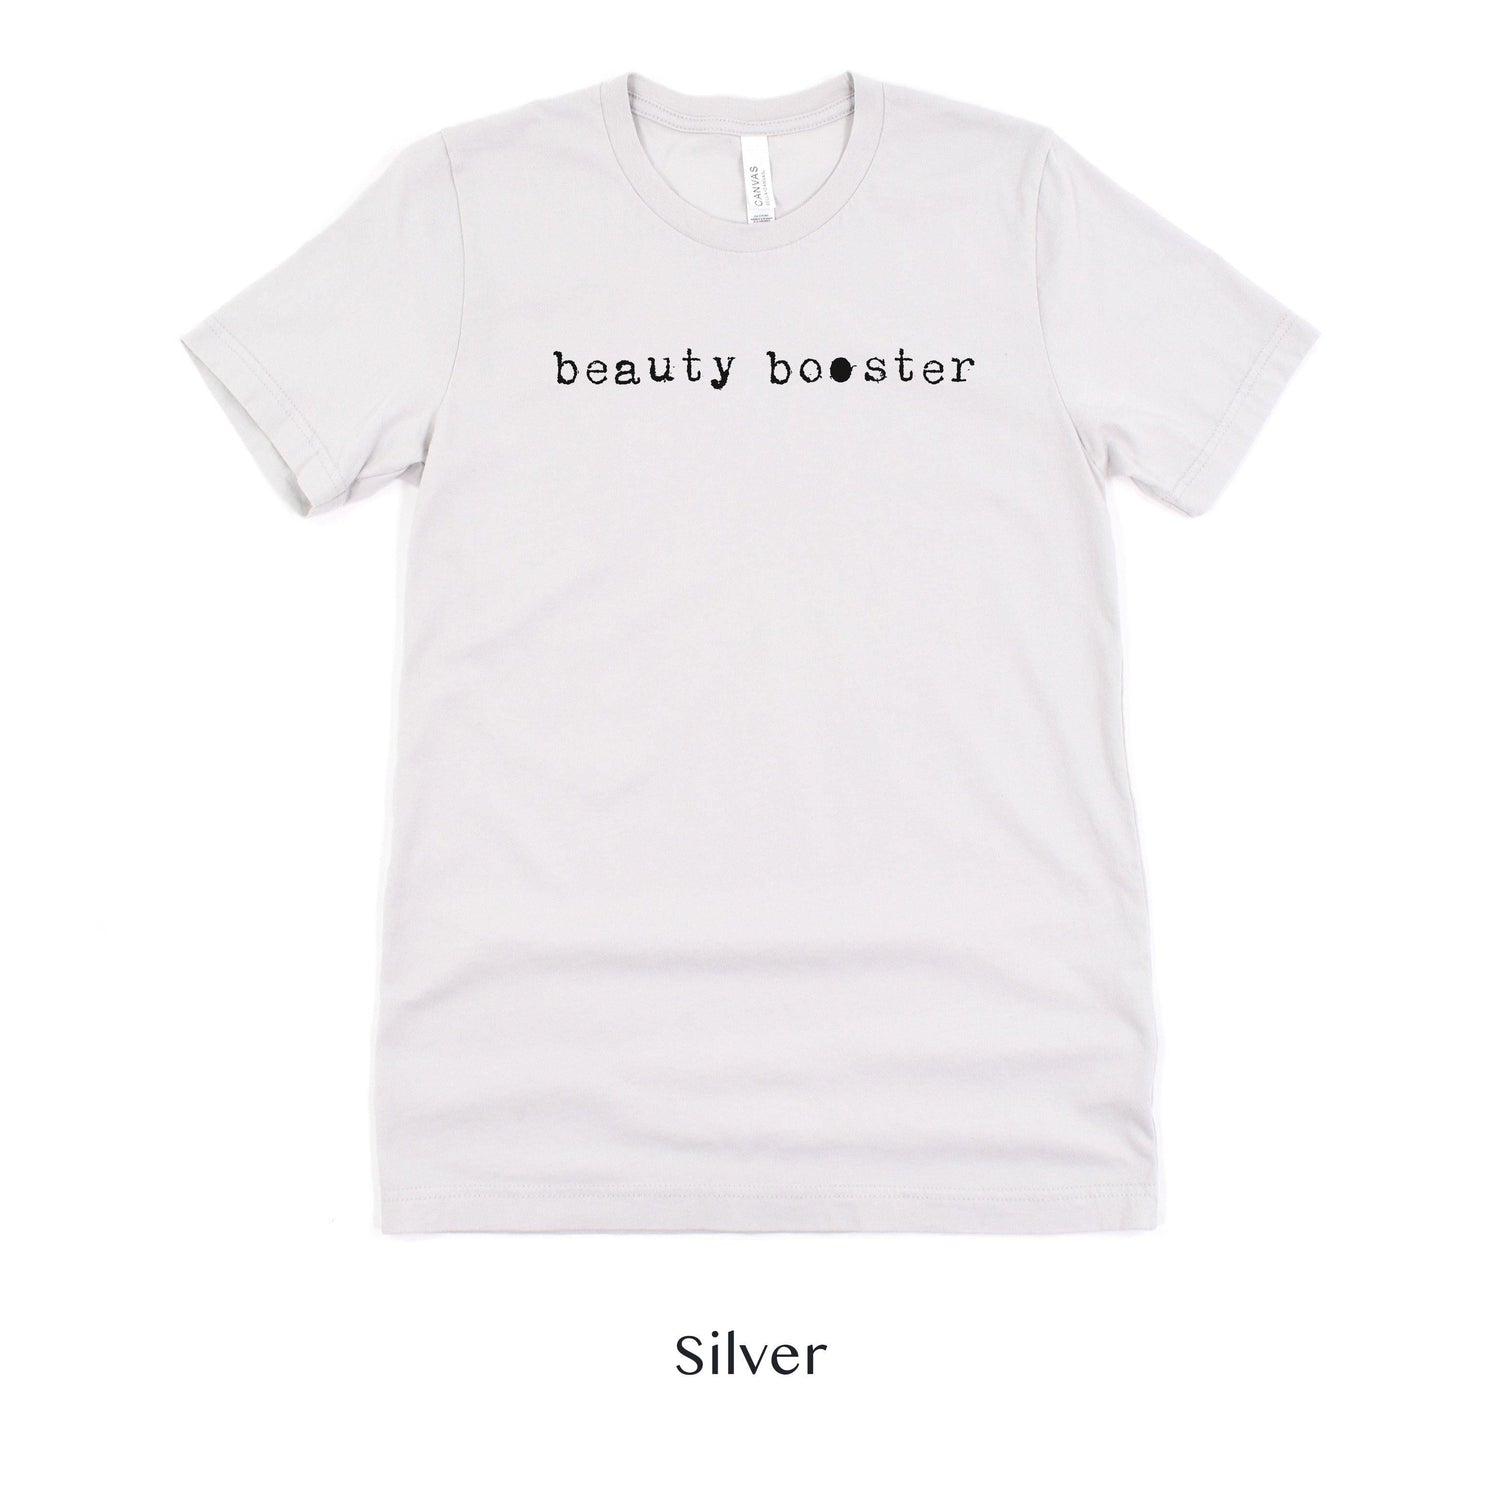 Beauty Booster - Hair and Makeup Artist shirt - HMUA Short-sleeve Tee by Oaklynn Lane - silver